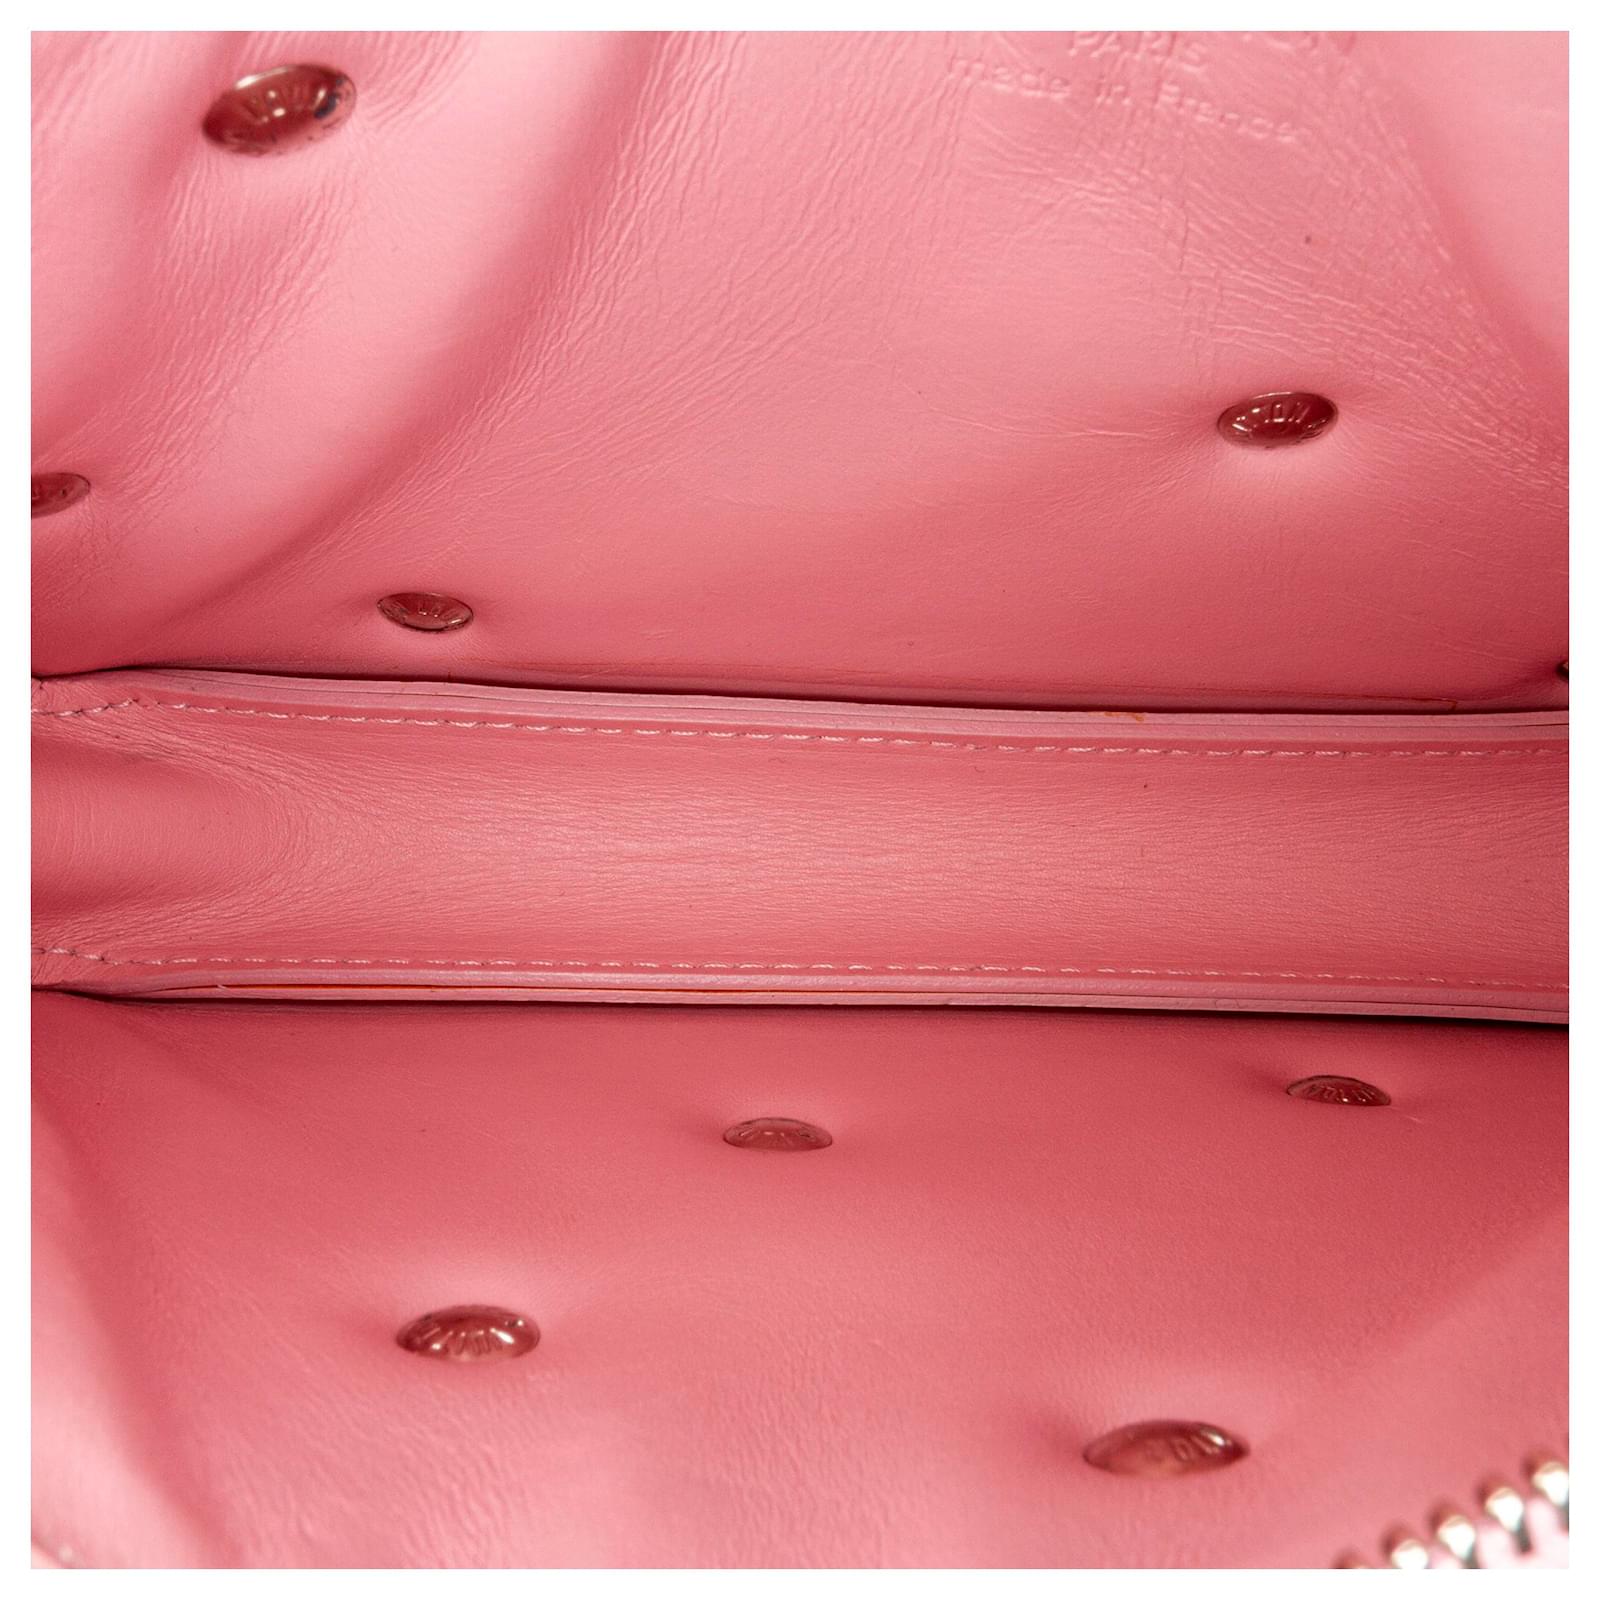 Louis Vuitton Pink Monogram Vernis Fleurs Lexington Pochette